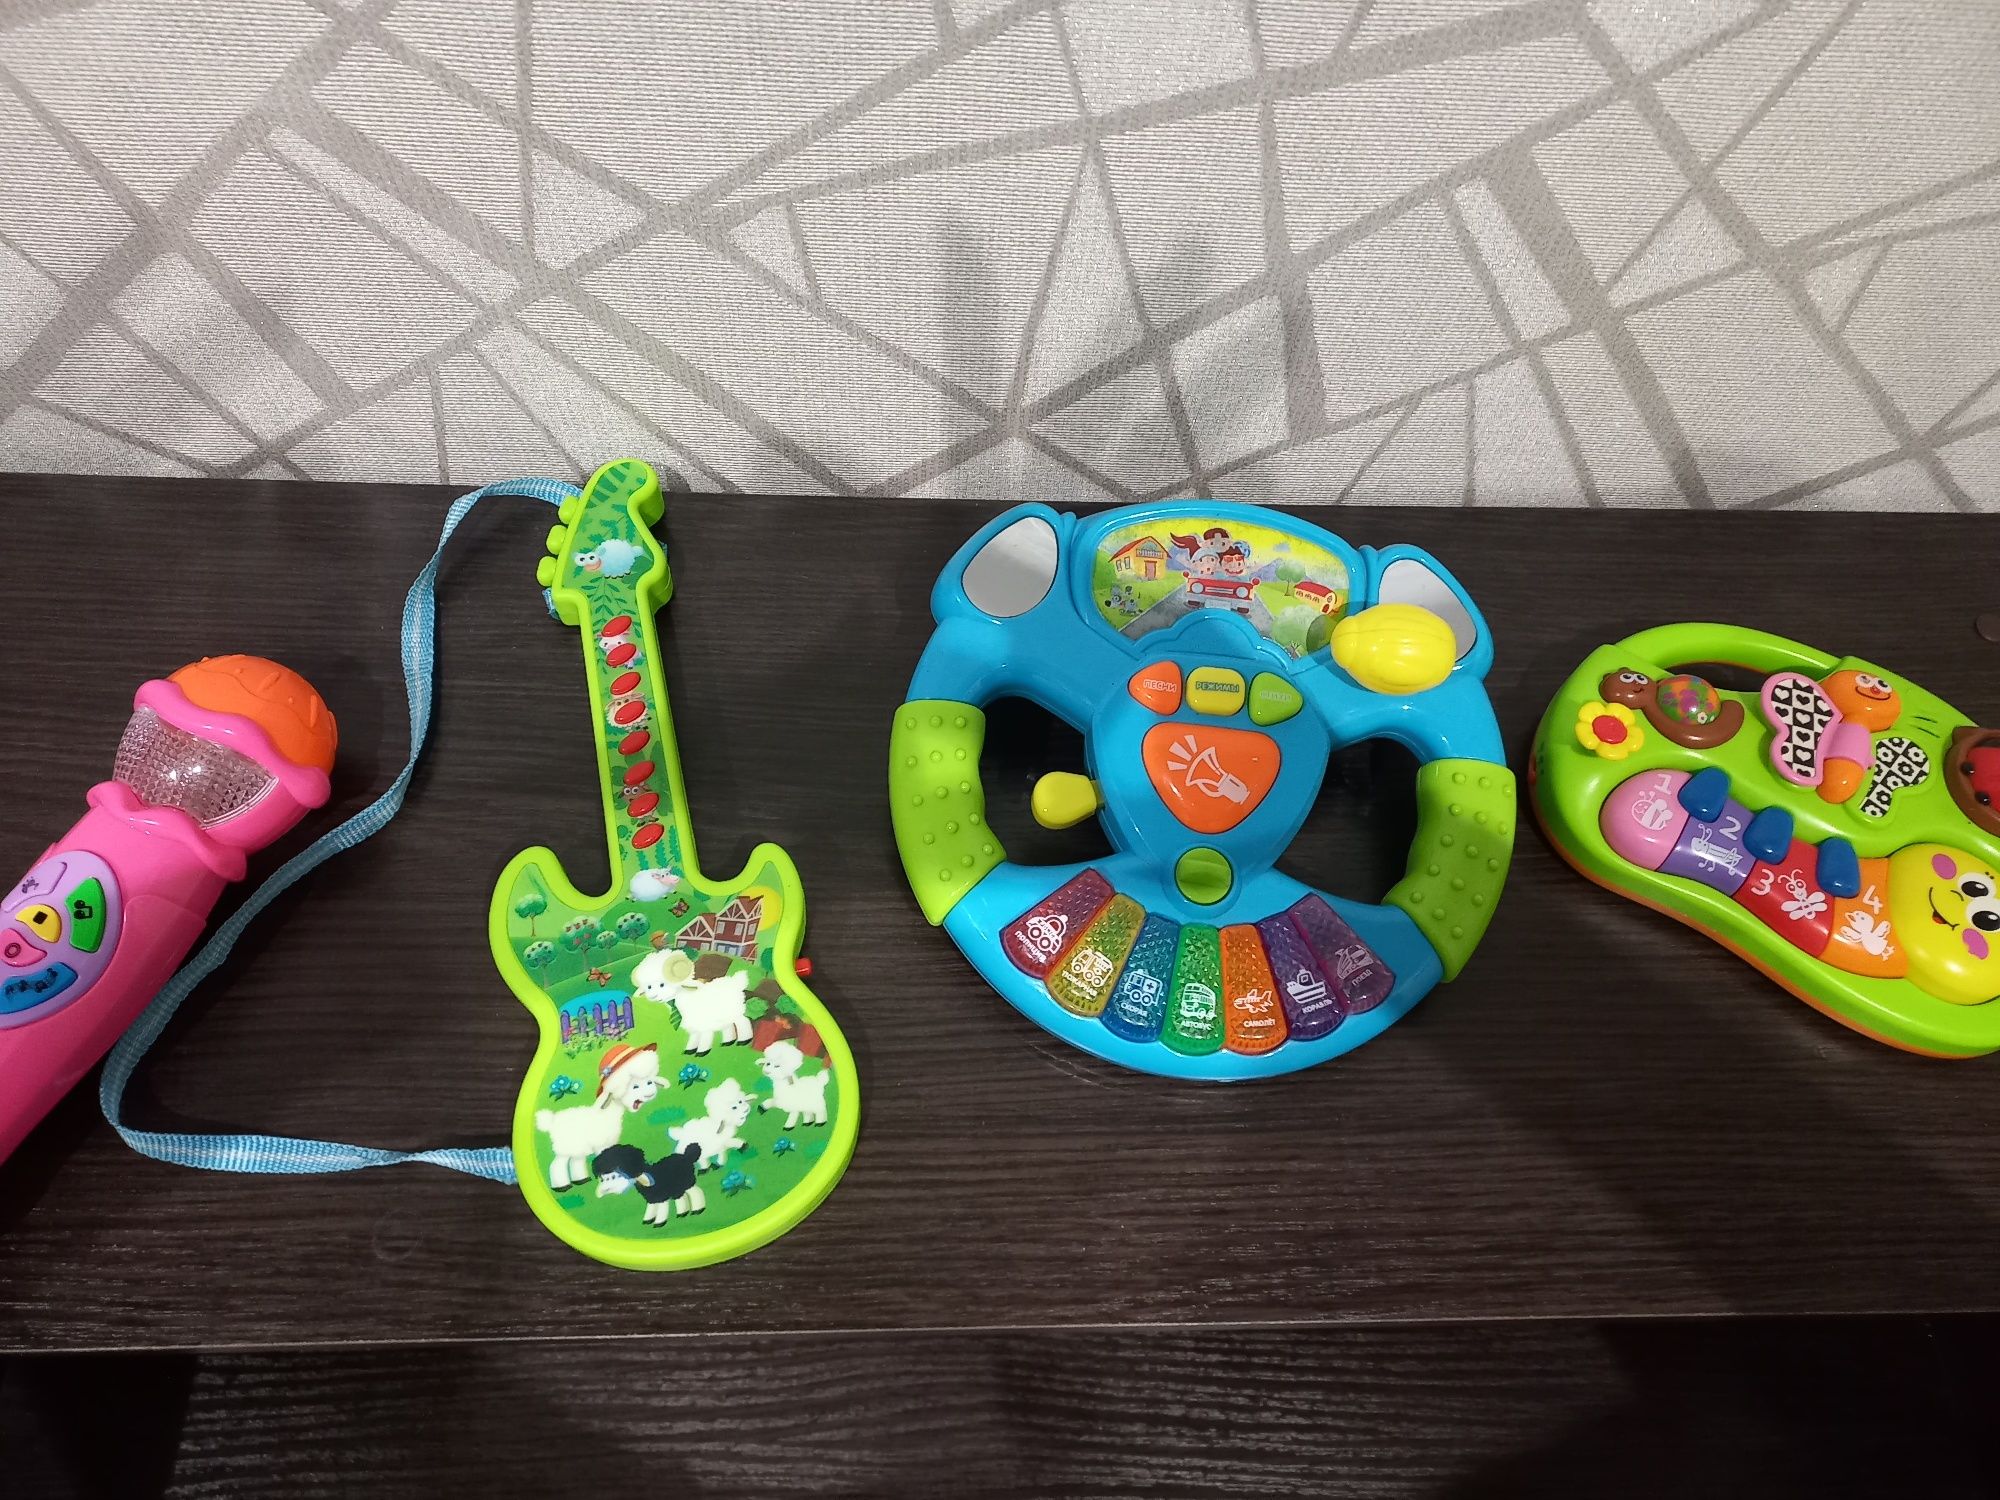 Музыкальные развивающие игрушки